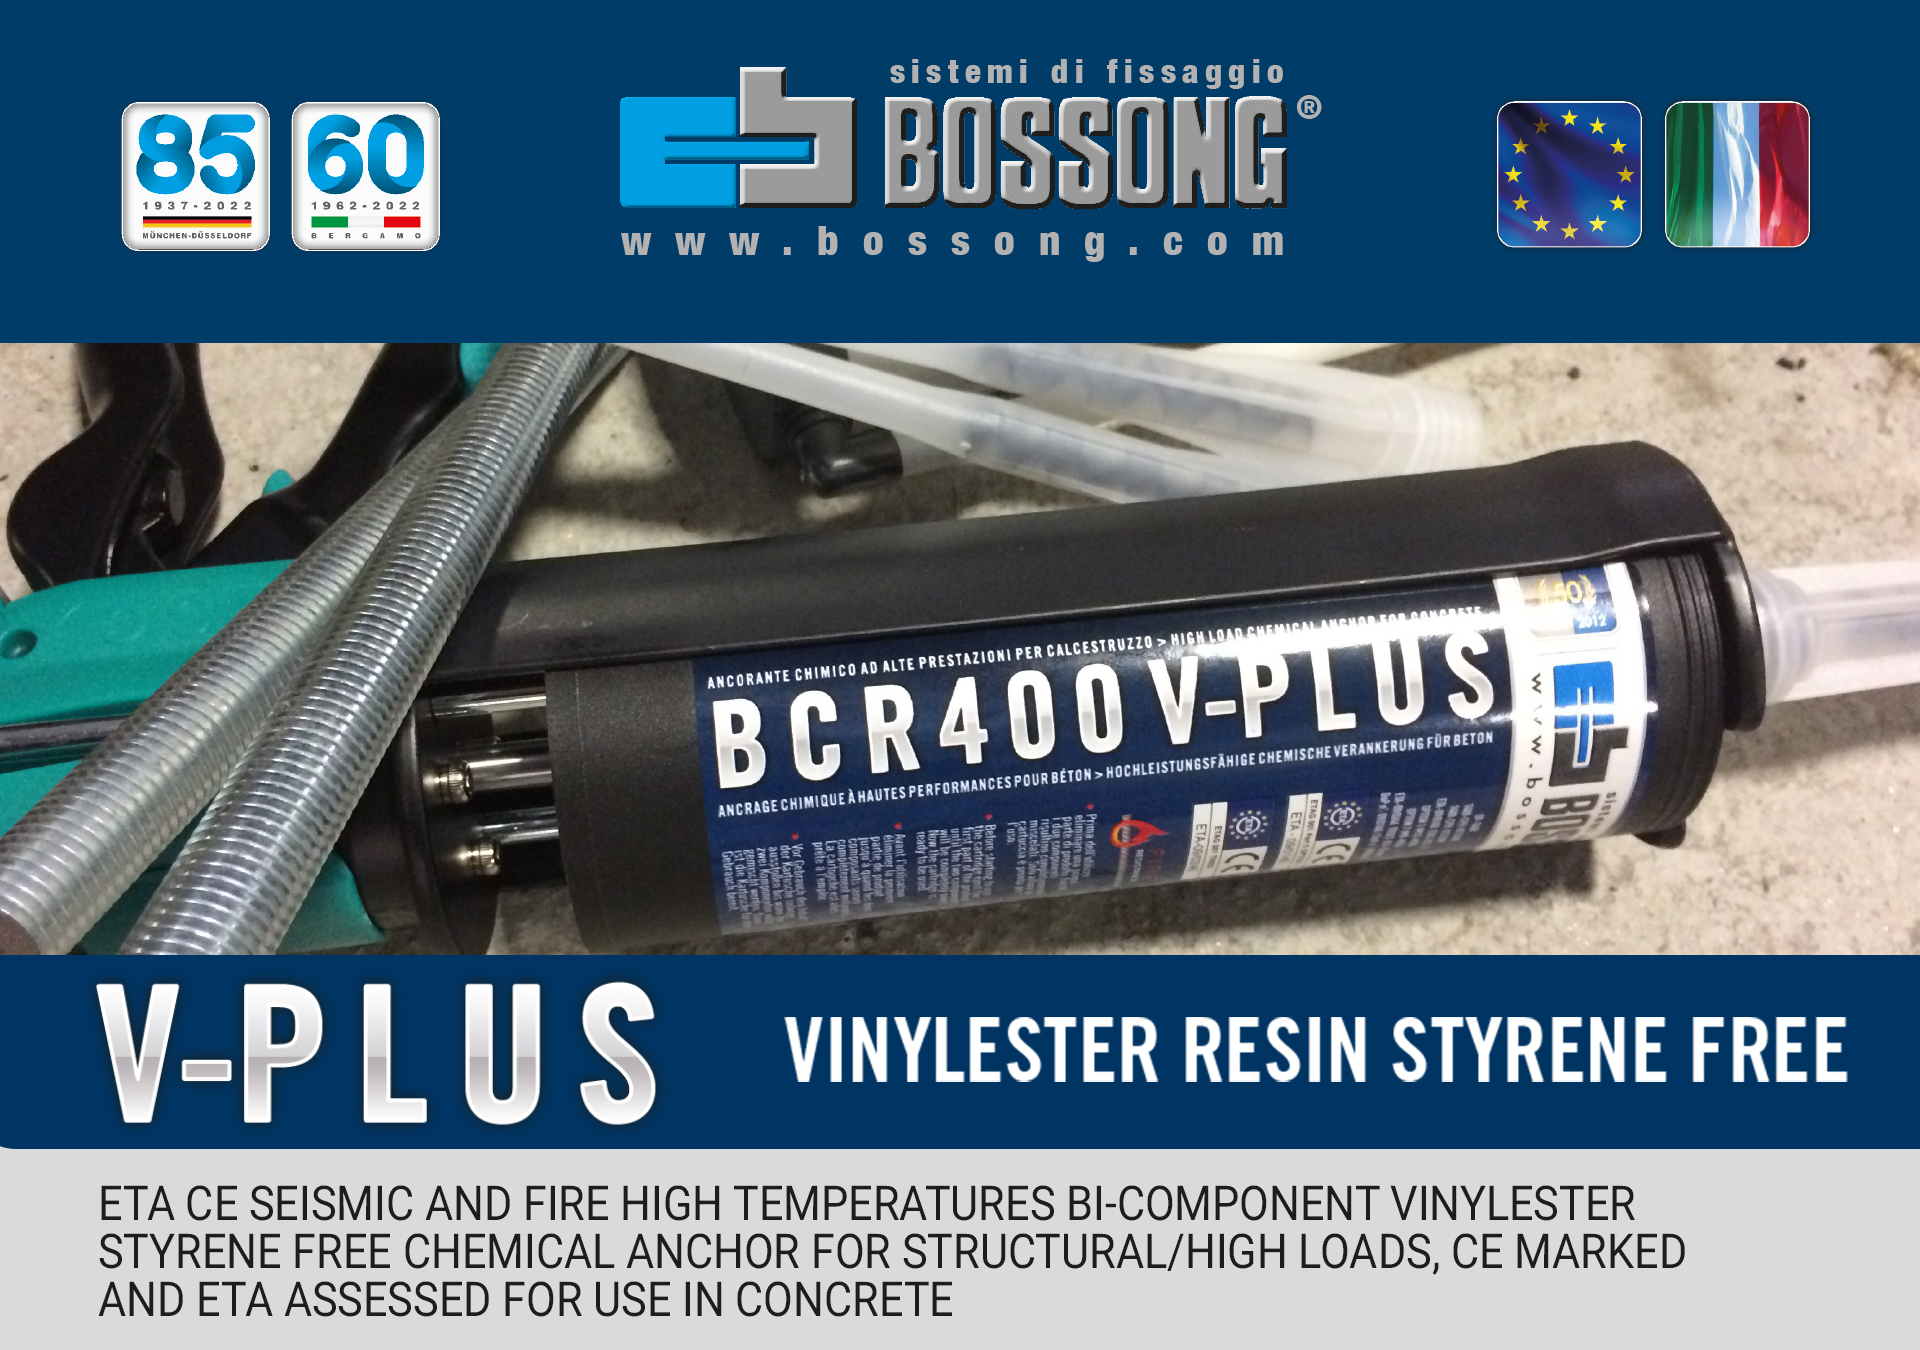 Vinylester seismic resin for bars - BCR V-PLUS